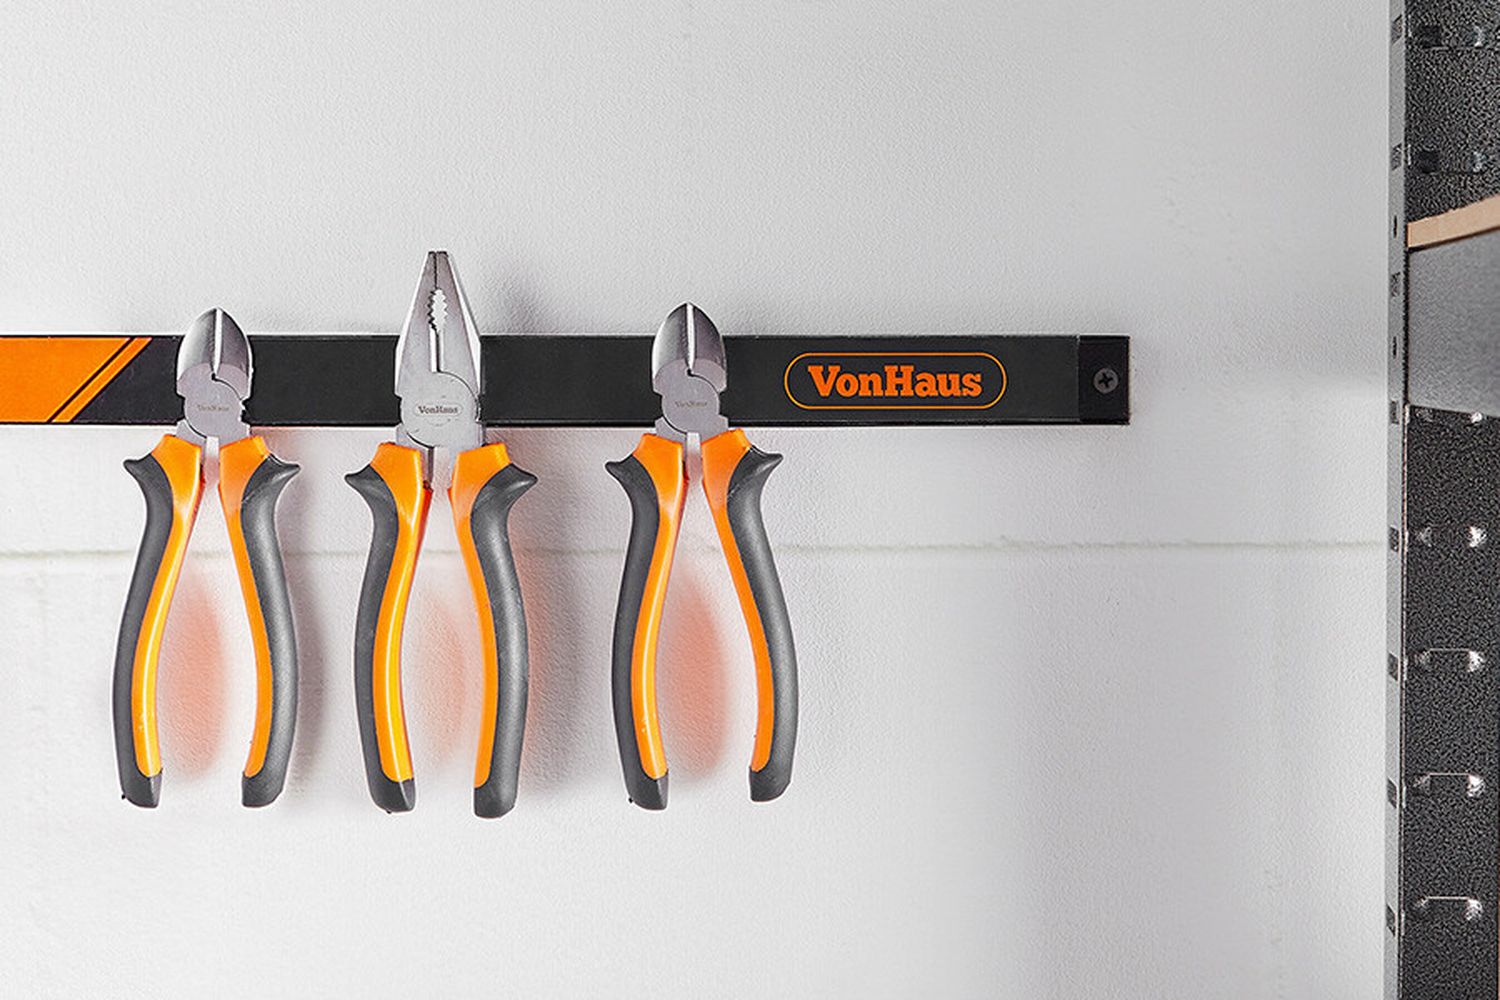 Barres magnétiques barre aimantée pour outils 60cm - garage outils